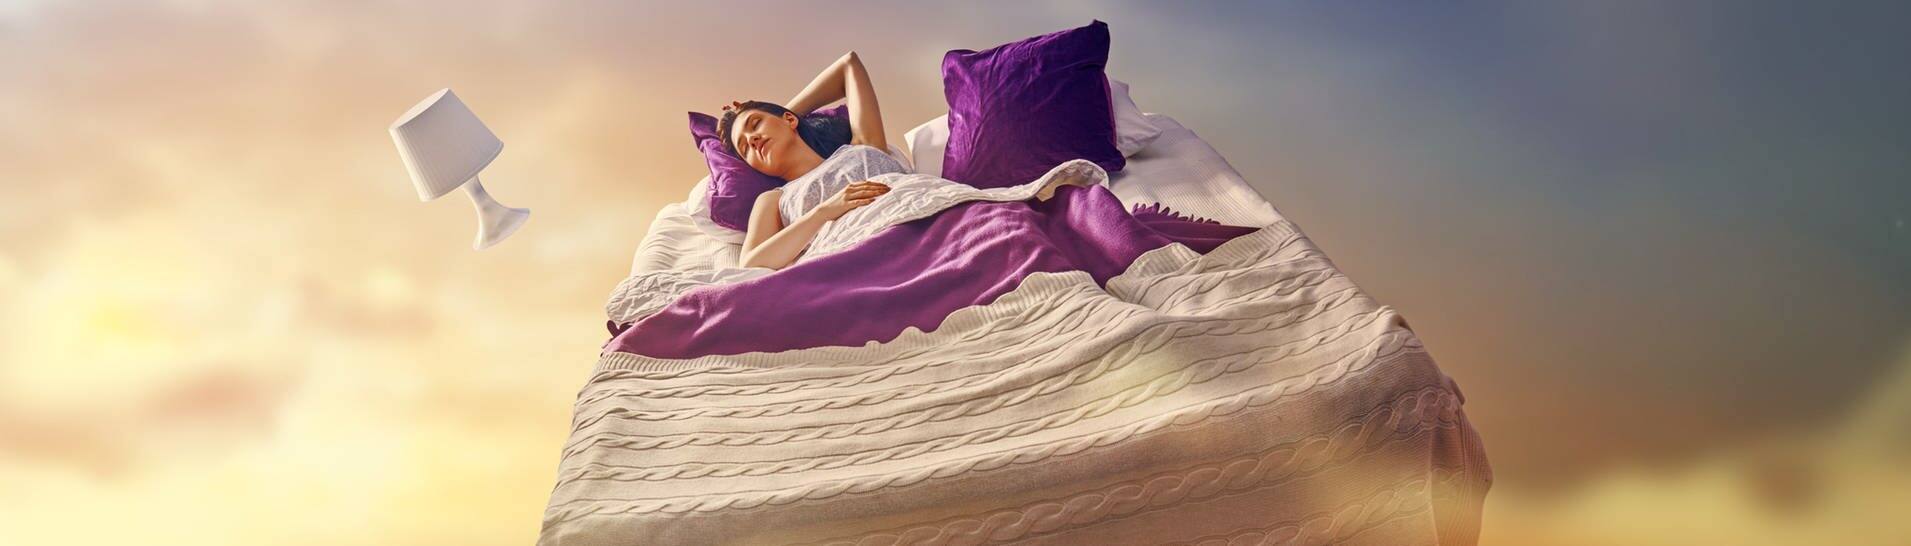 Mädchen liegt im Bett, dass im Himmel fliegt (Foto: Adobe Stock, Konstantin Yuganov)